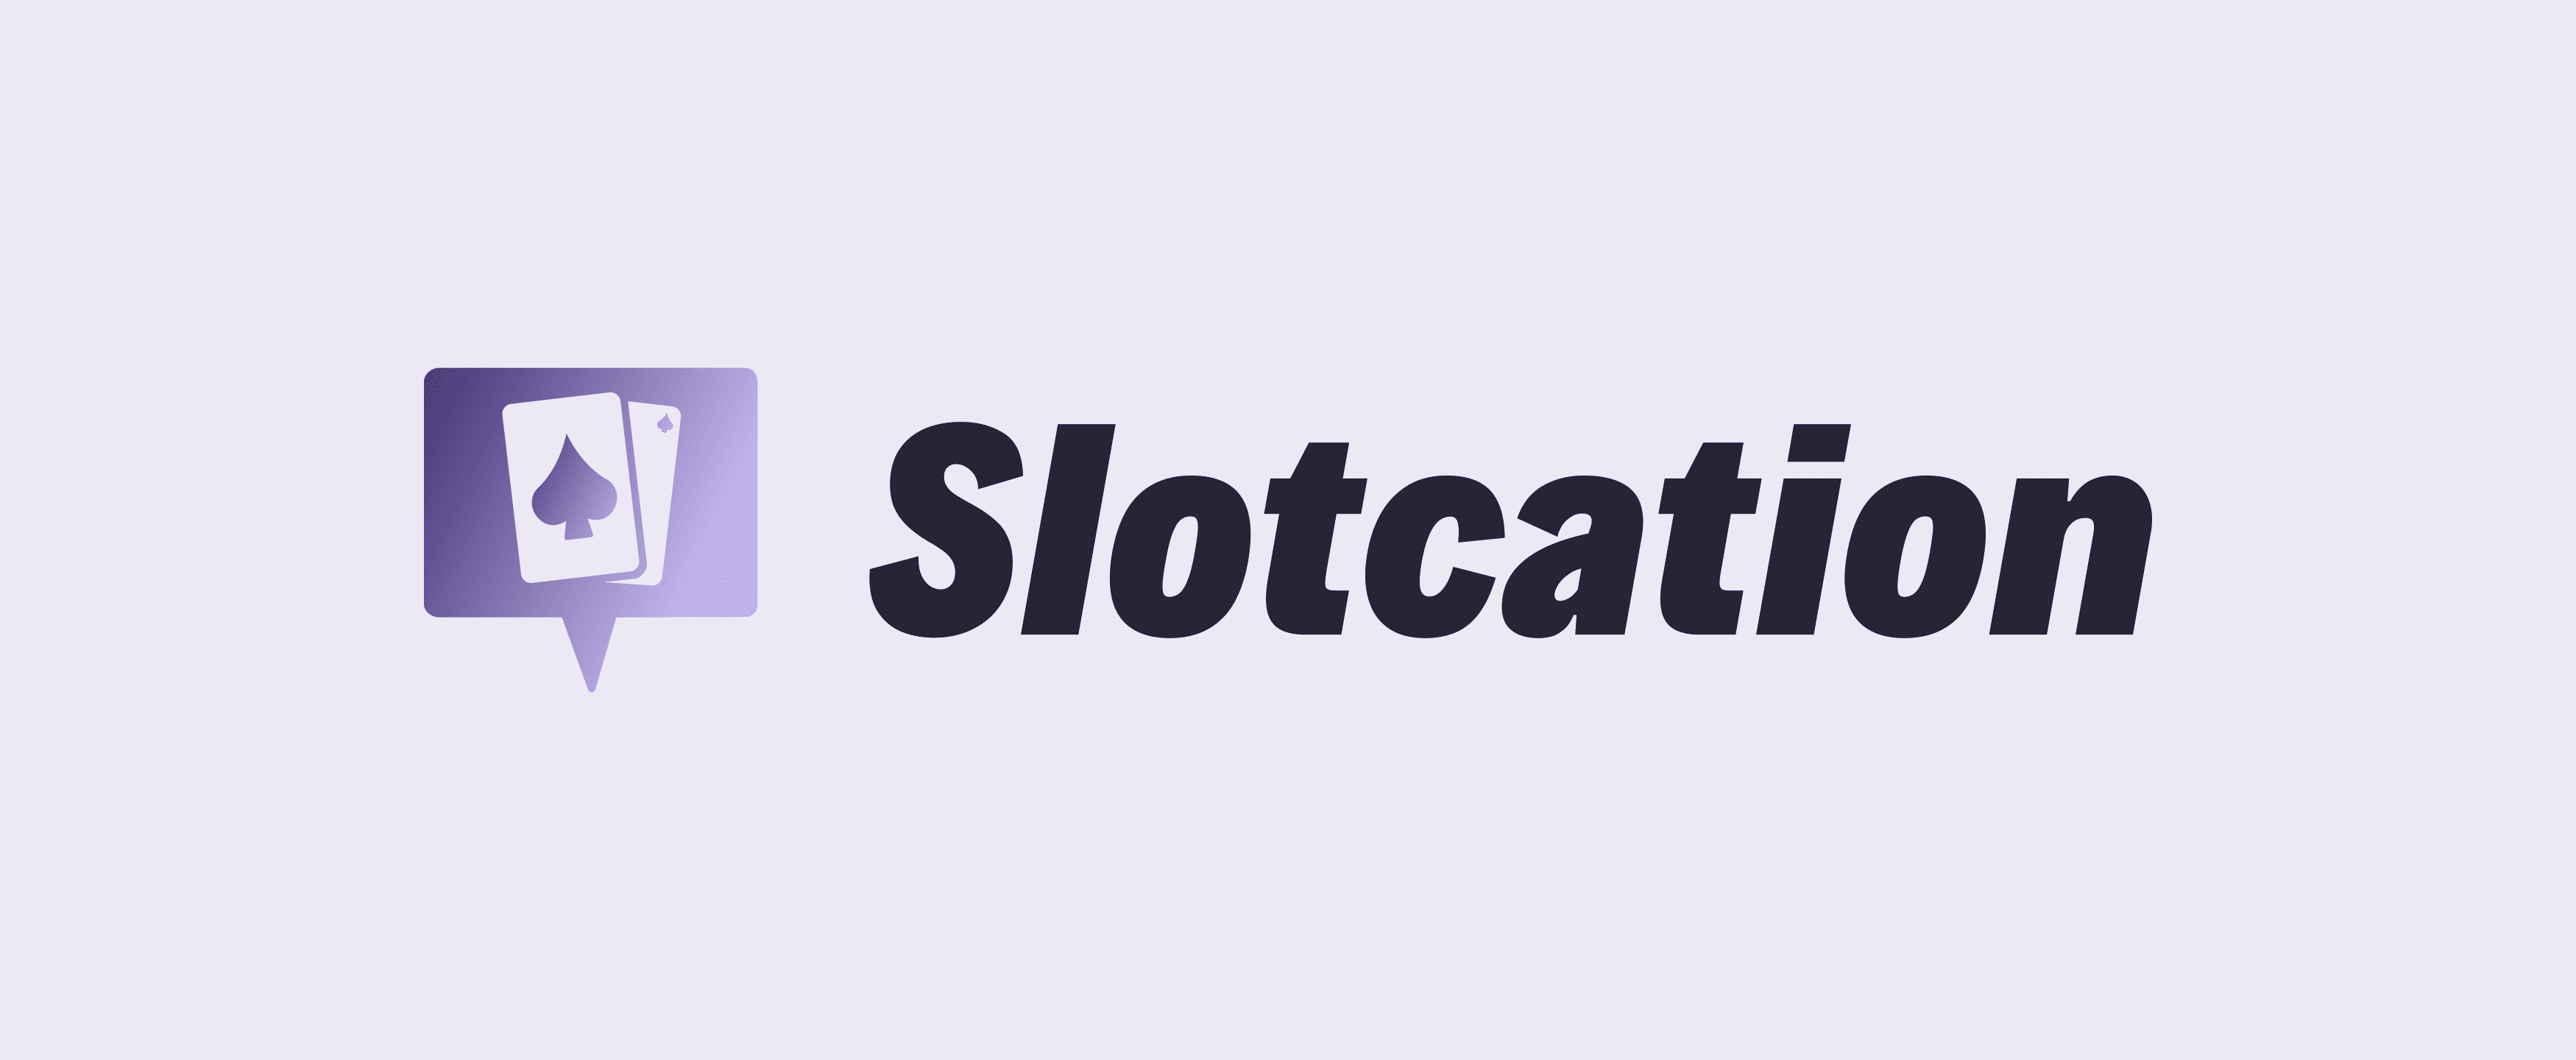 Slotcation Example Branding Photo